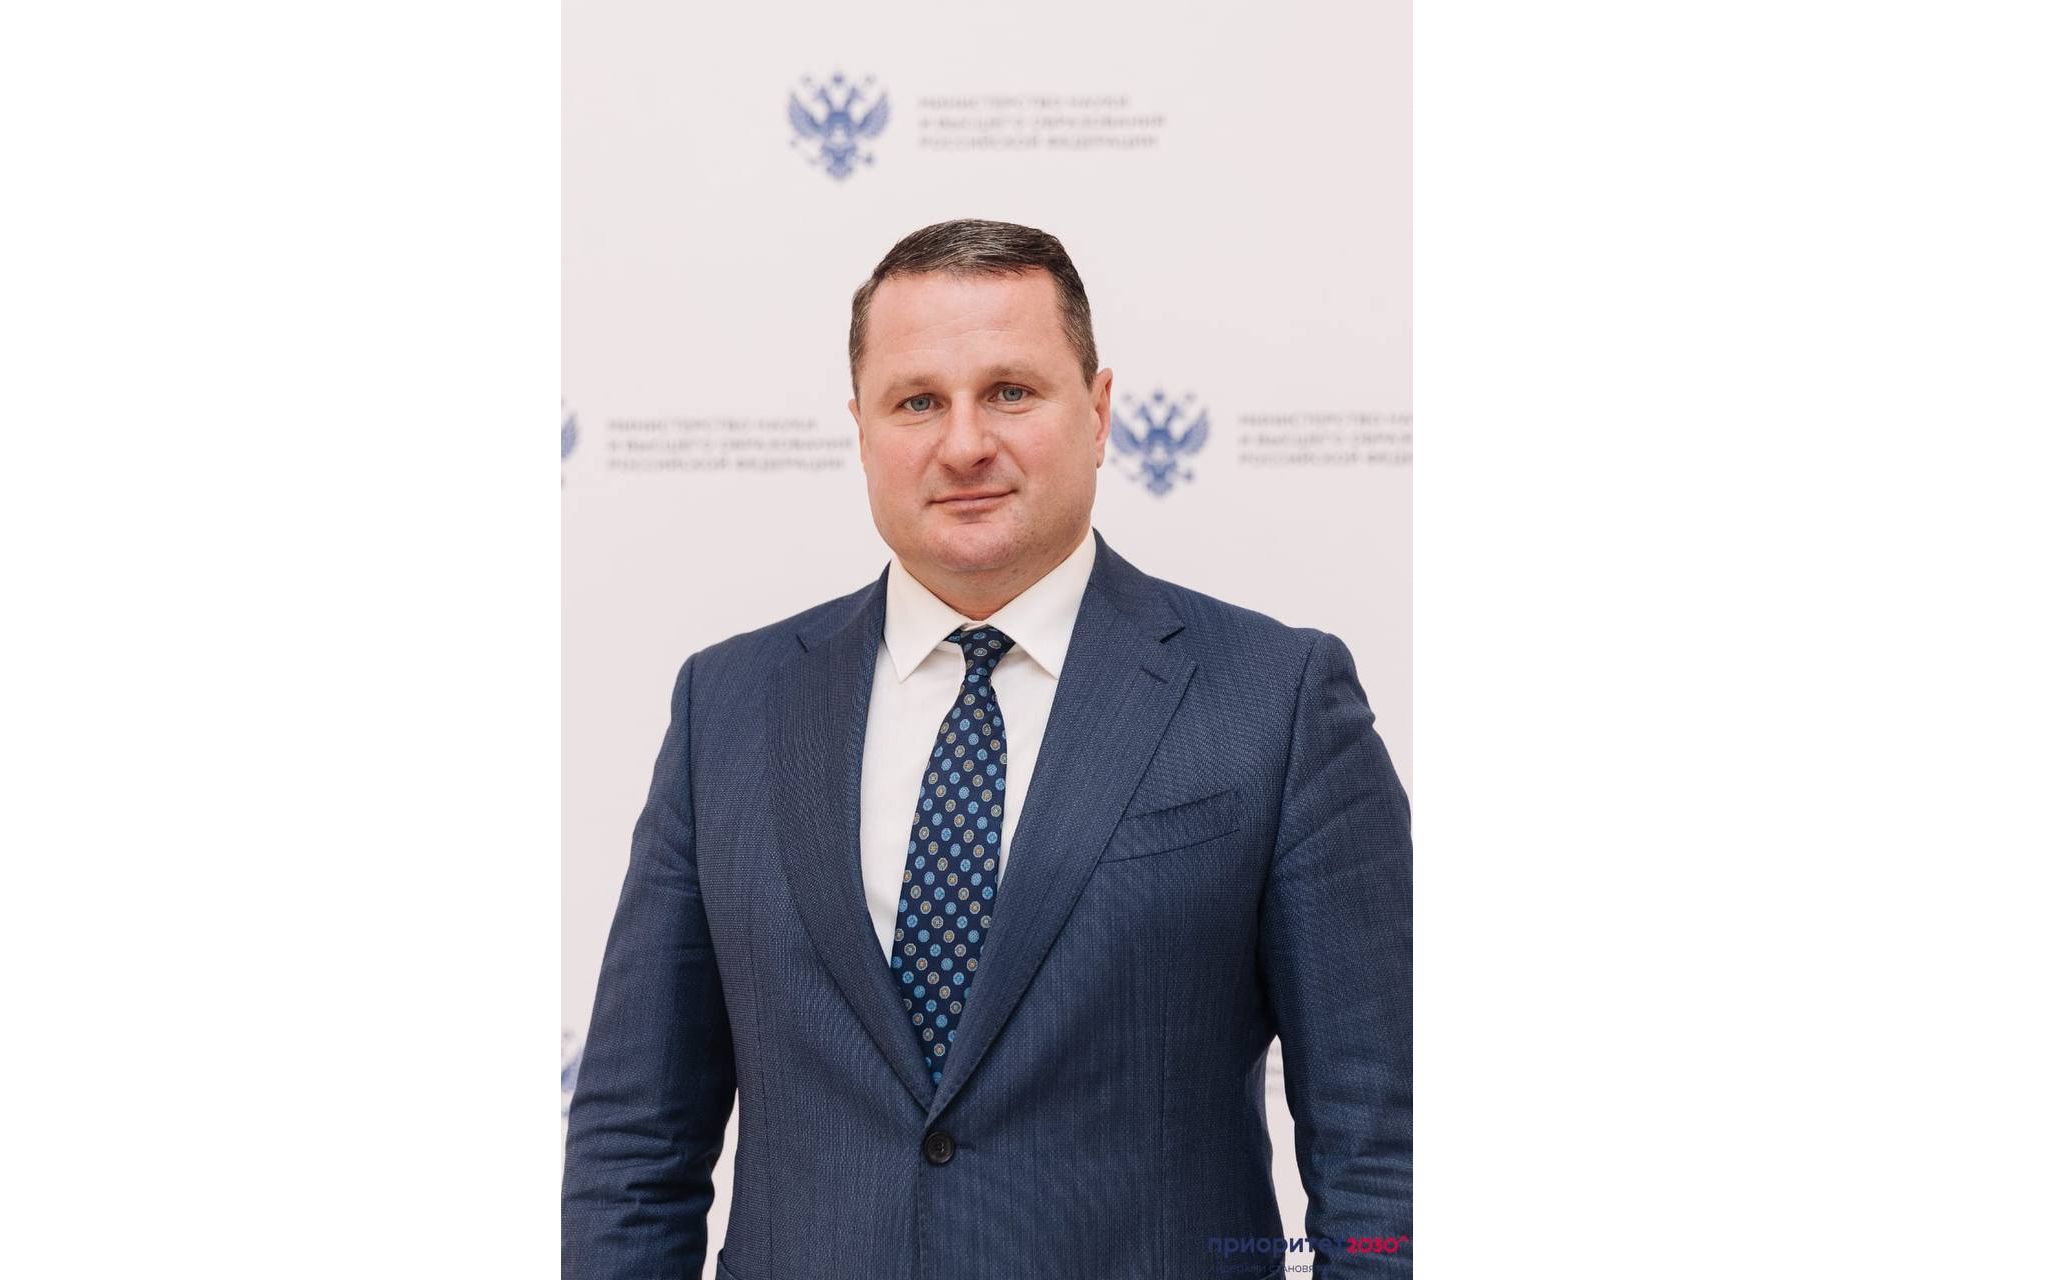 Артем Иванчин был избран новым ректором университета имени Демидова